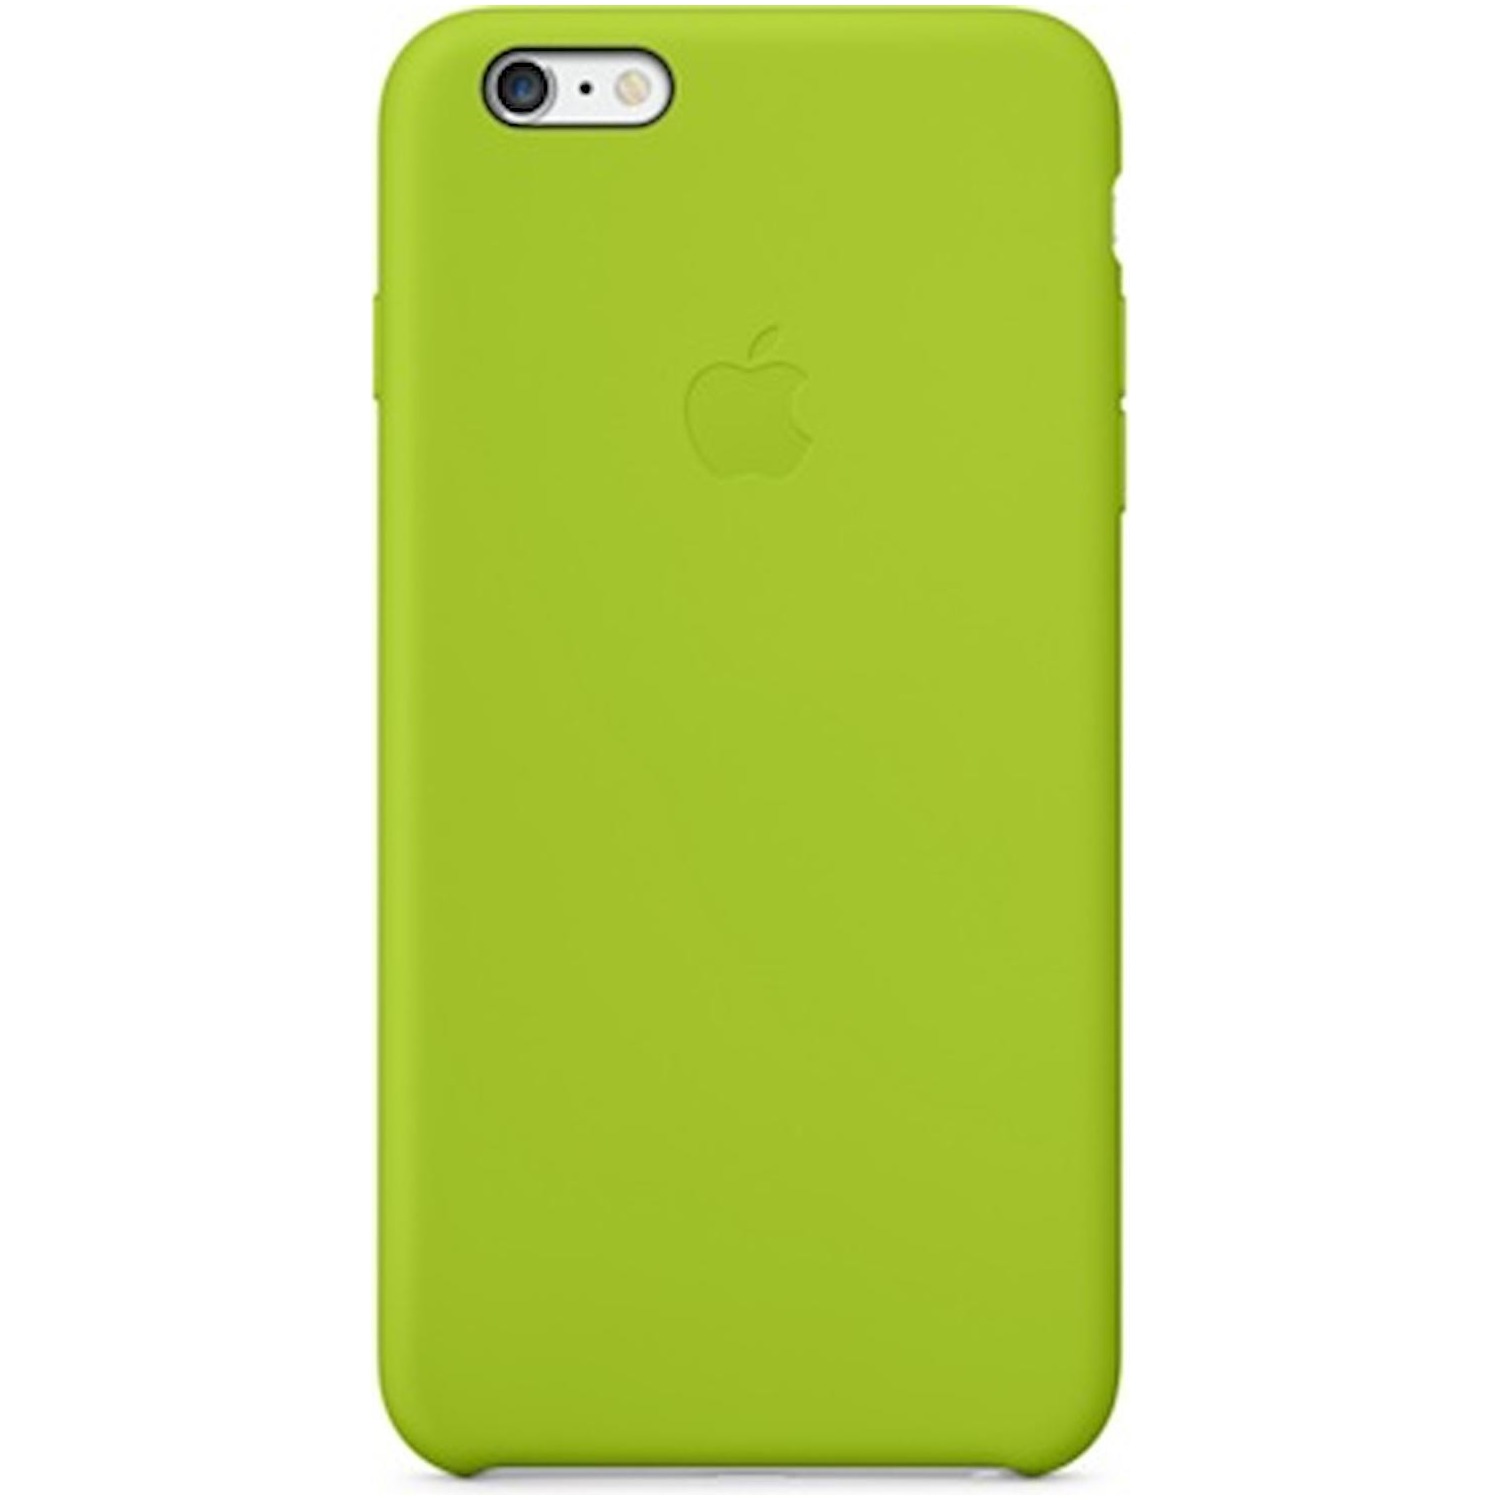 Immagine per Custodia in silicone Apple per iPhone 6 Plus green da DIMOStore